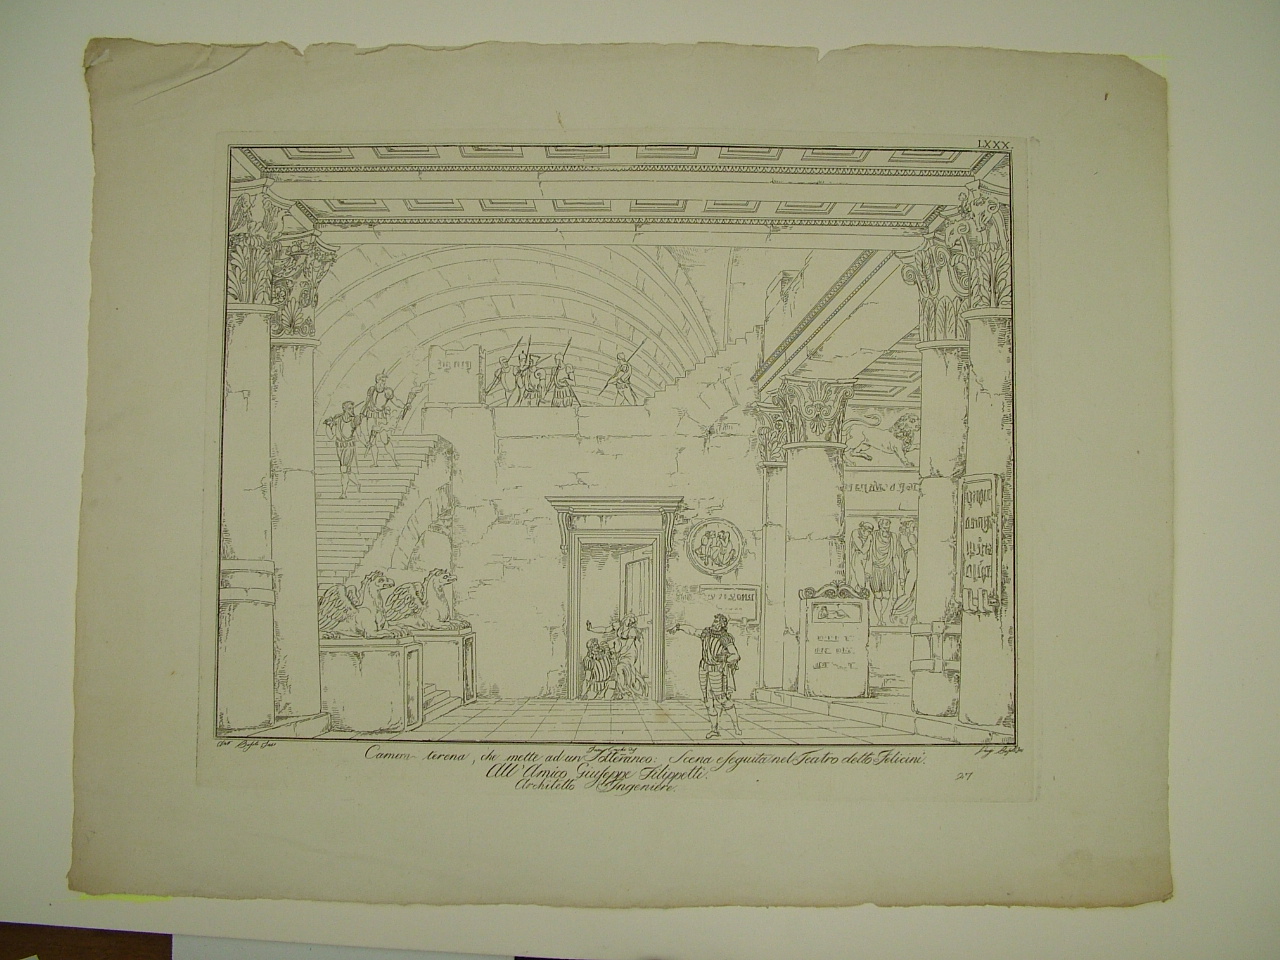 Camera terena che mette ad un sotterraneo, architettura (stampa) di Basoli Luigi, Basoli Antonio, Cocchi Francesco (inizio sec. XIX)